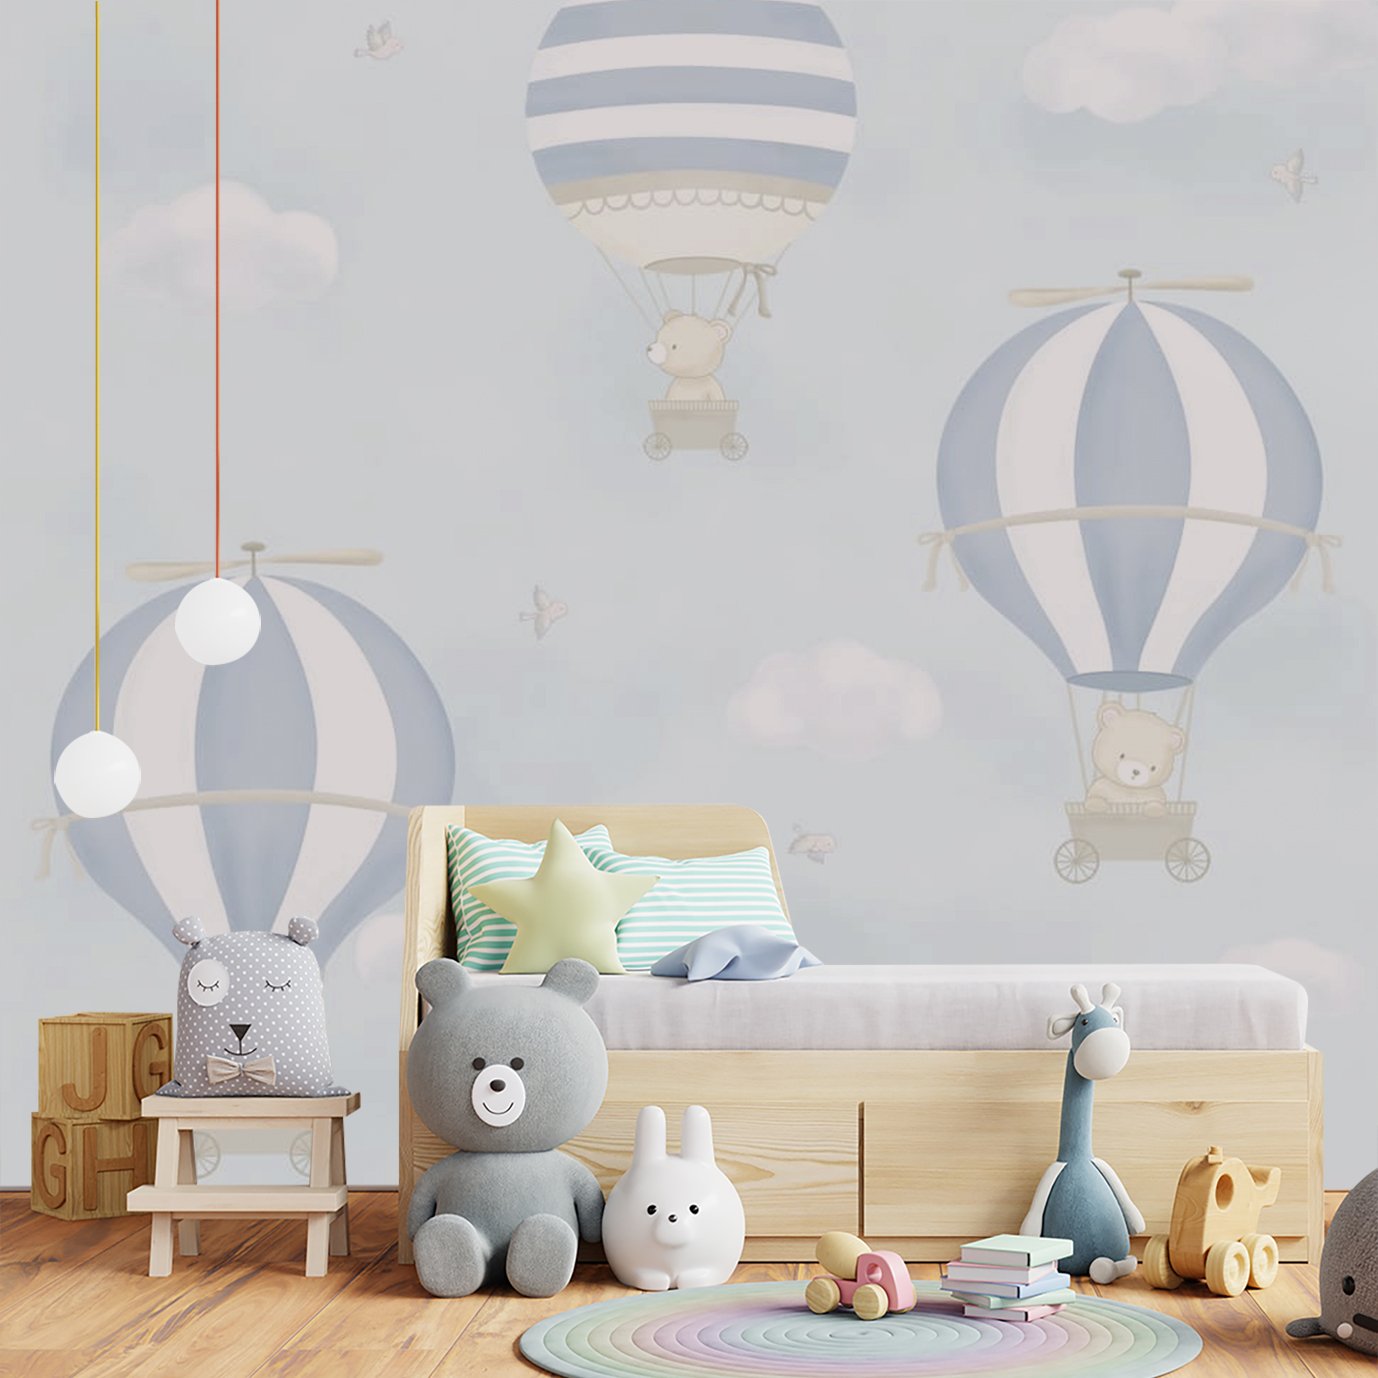 Papel de parede balão azul menino para quarto de bebê infantil M² PP98 - 4